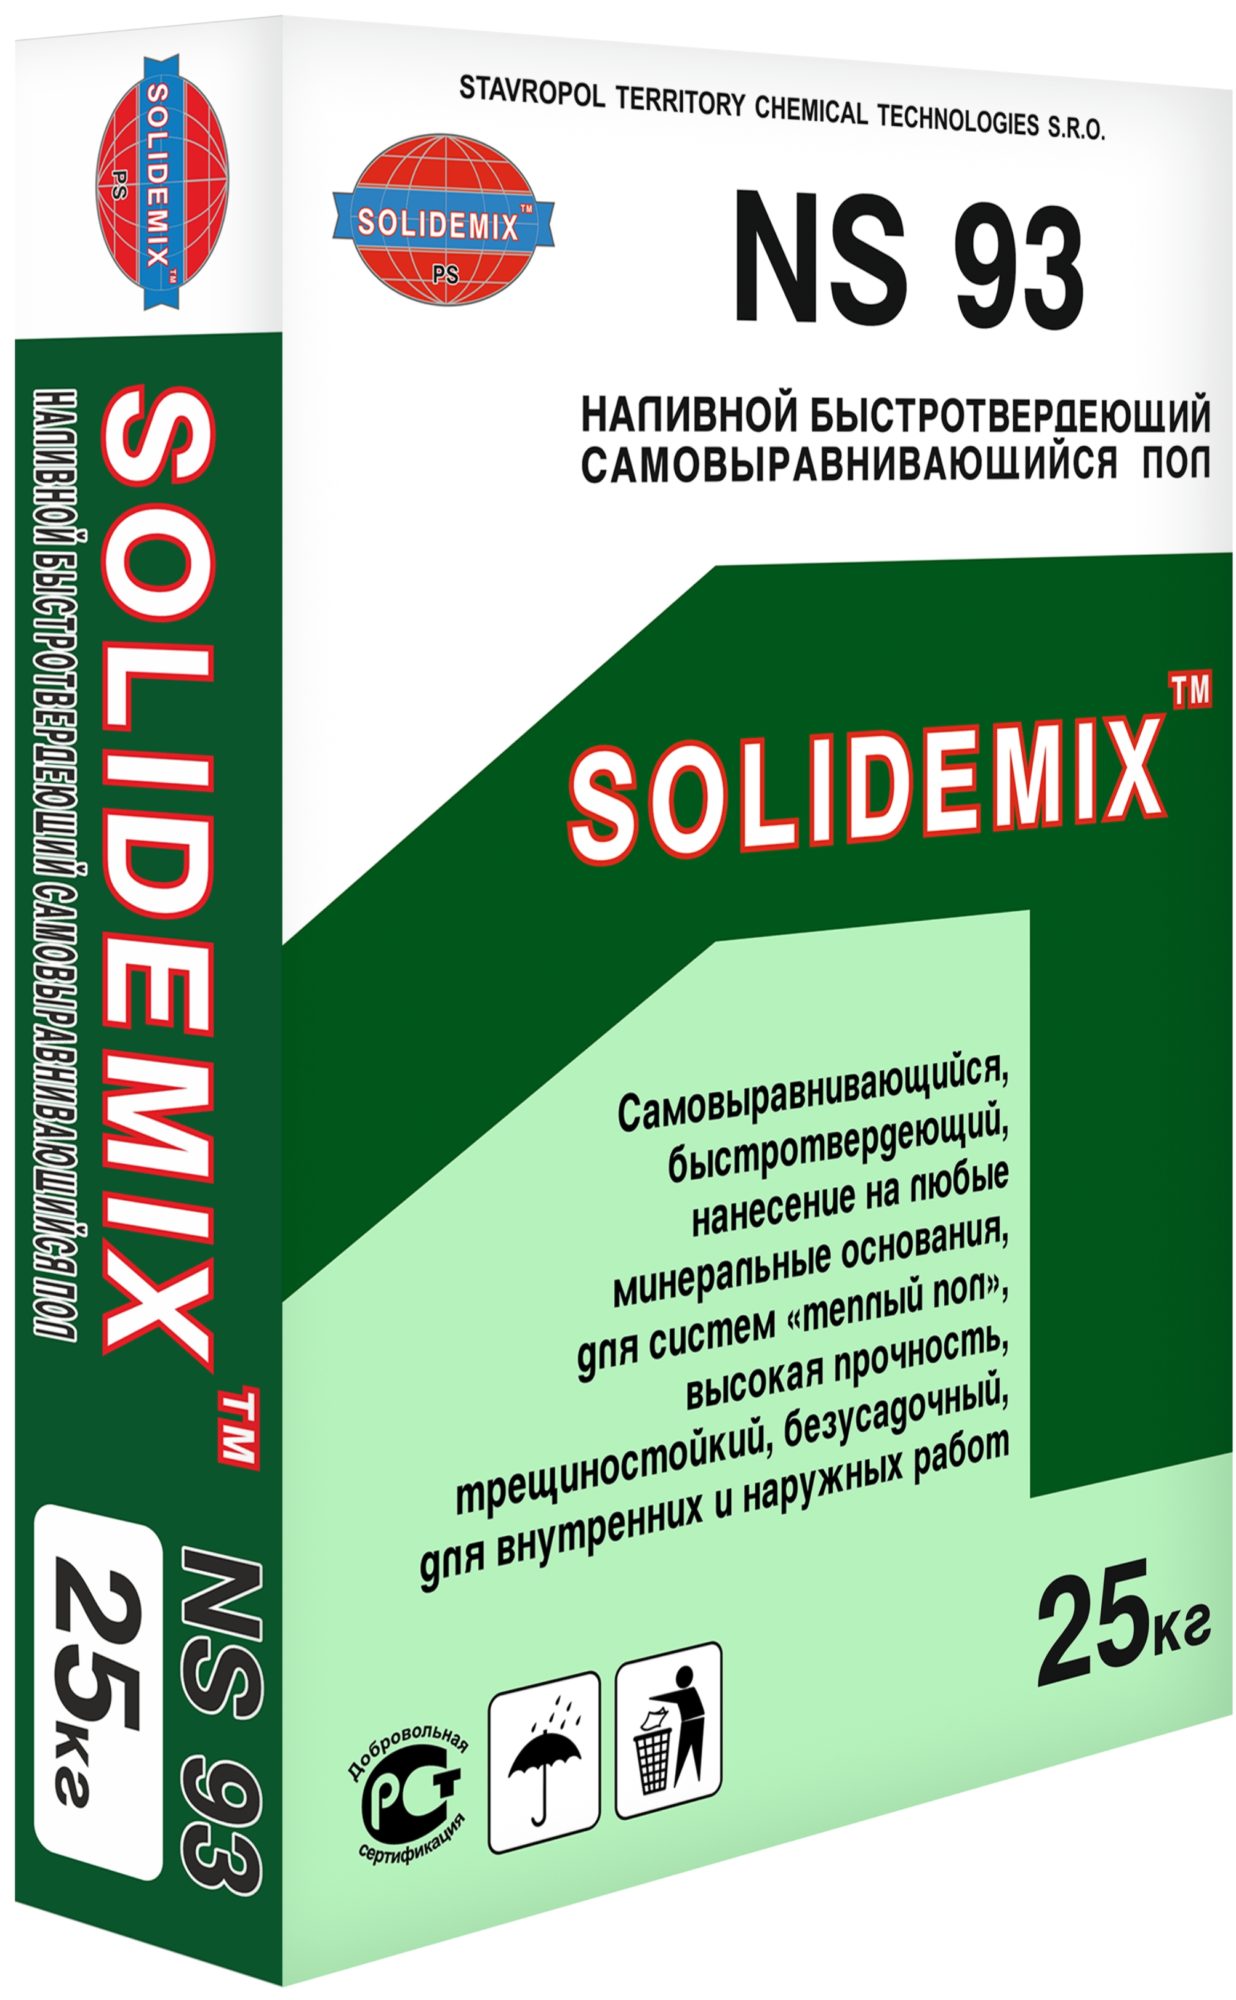 Купить Наливной быстротвердеющий самовыравнивающийся пол NS 93 от SOLIDEMIX